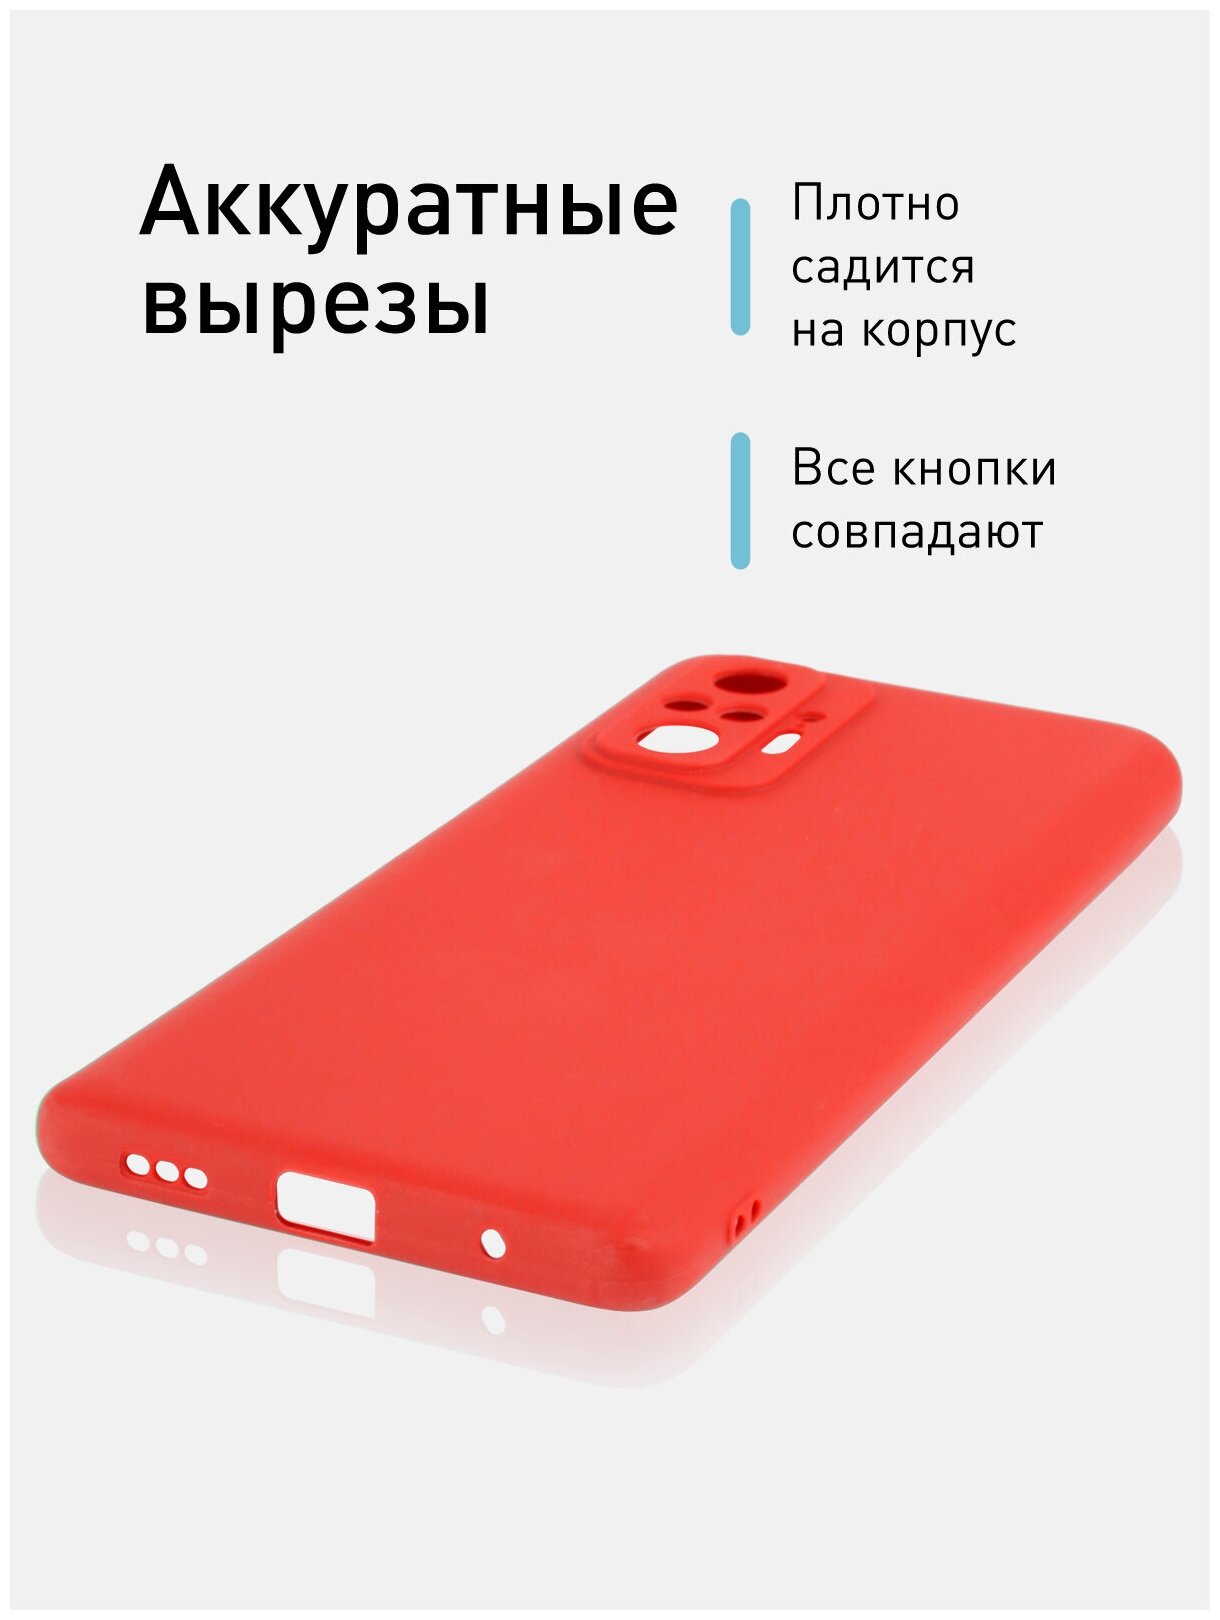 Матовый силиконовый чехол ROSCO для Xiaomi Redmi Note 10 Pro (Сяоми / Ксиаоми Редми Ноут 10 Про)